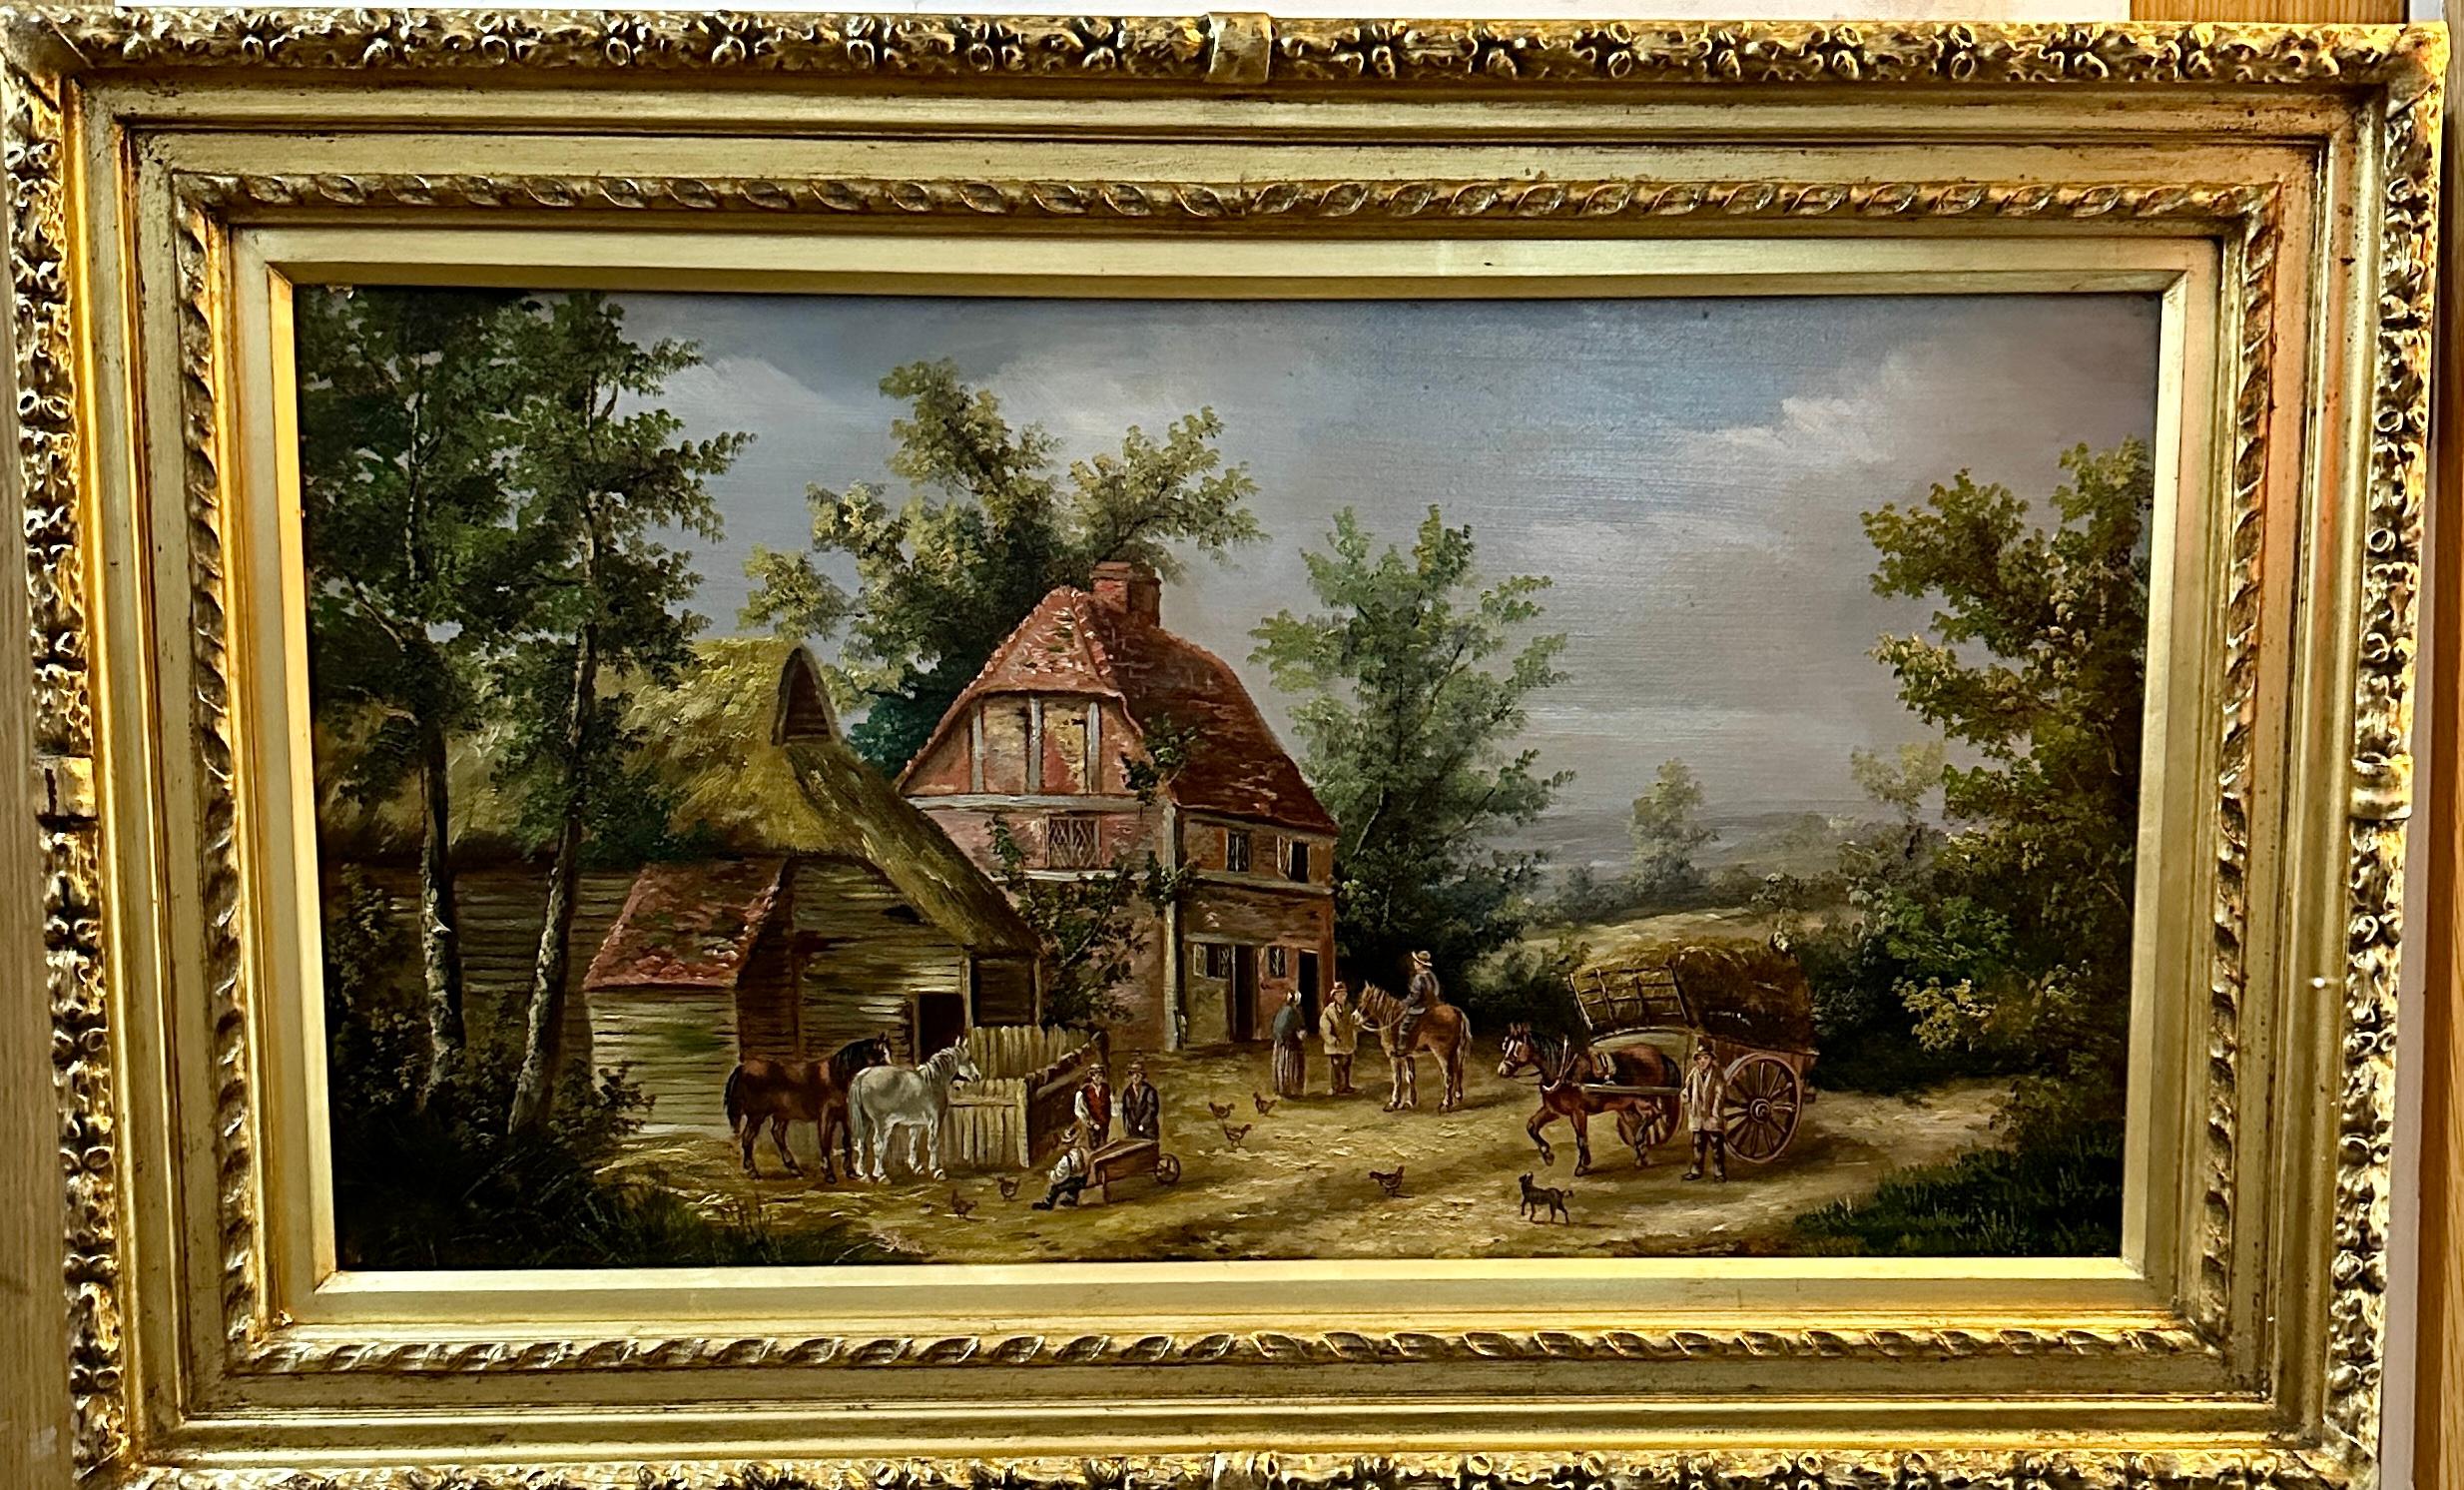 Scène de village anglaise du 19e siècle avec cottages, chevaux et personnes